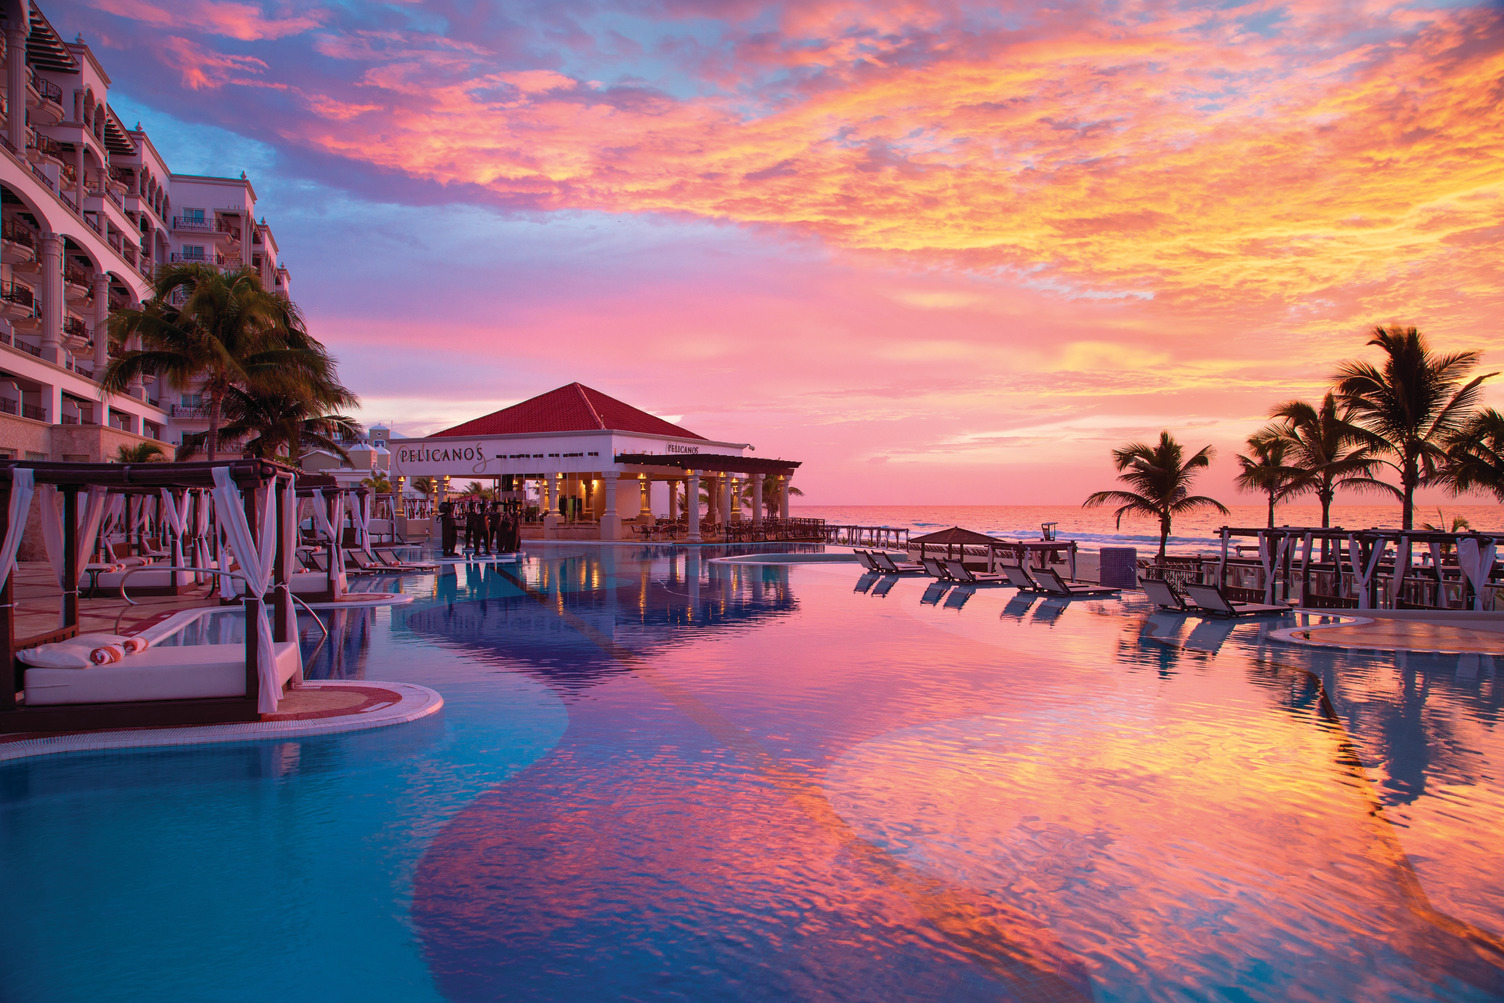 Hyatt-Zilara-Cancun-Main-Pool-Sunset